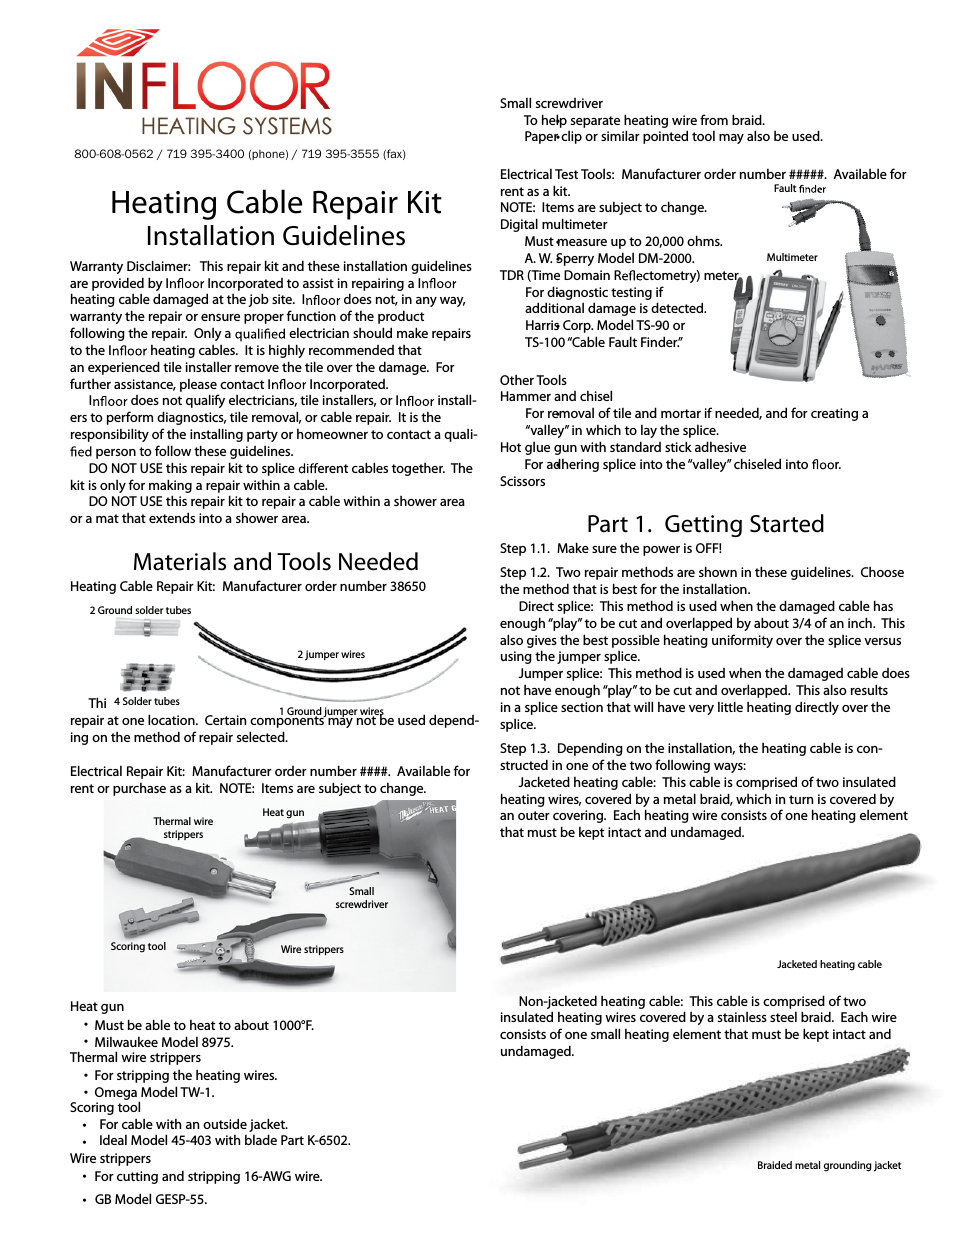 Heating Cable Repair Kit